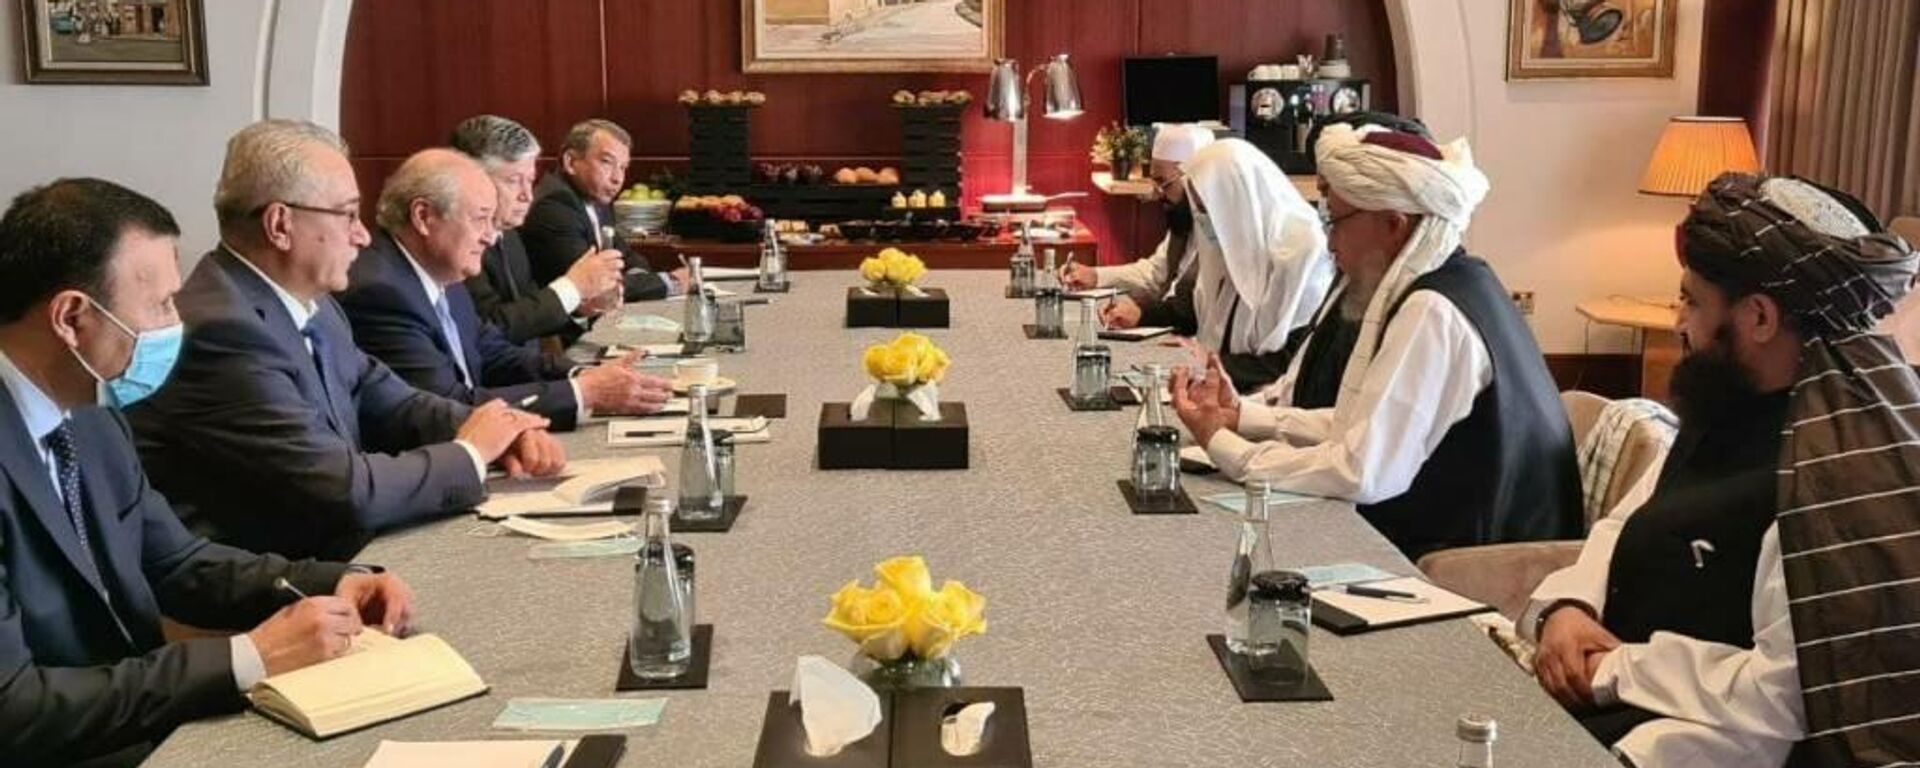 Встреча с главой политического представительства Движения Талибан* в Катаре - Sputnik Узбекистан, 1920, 11.04.2021